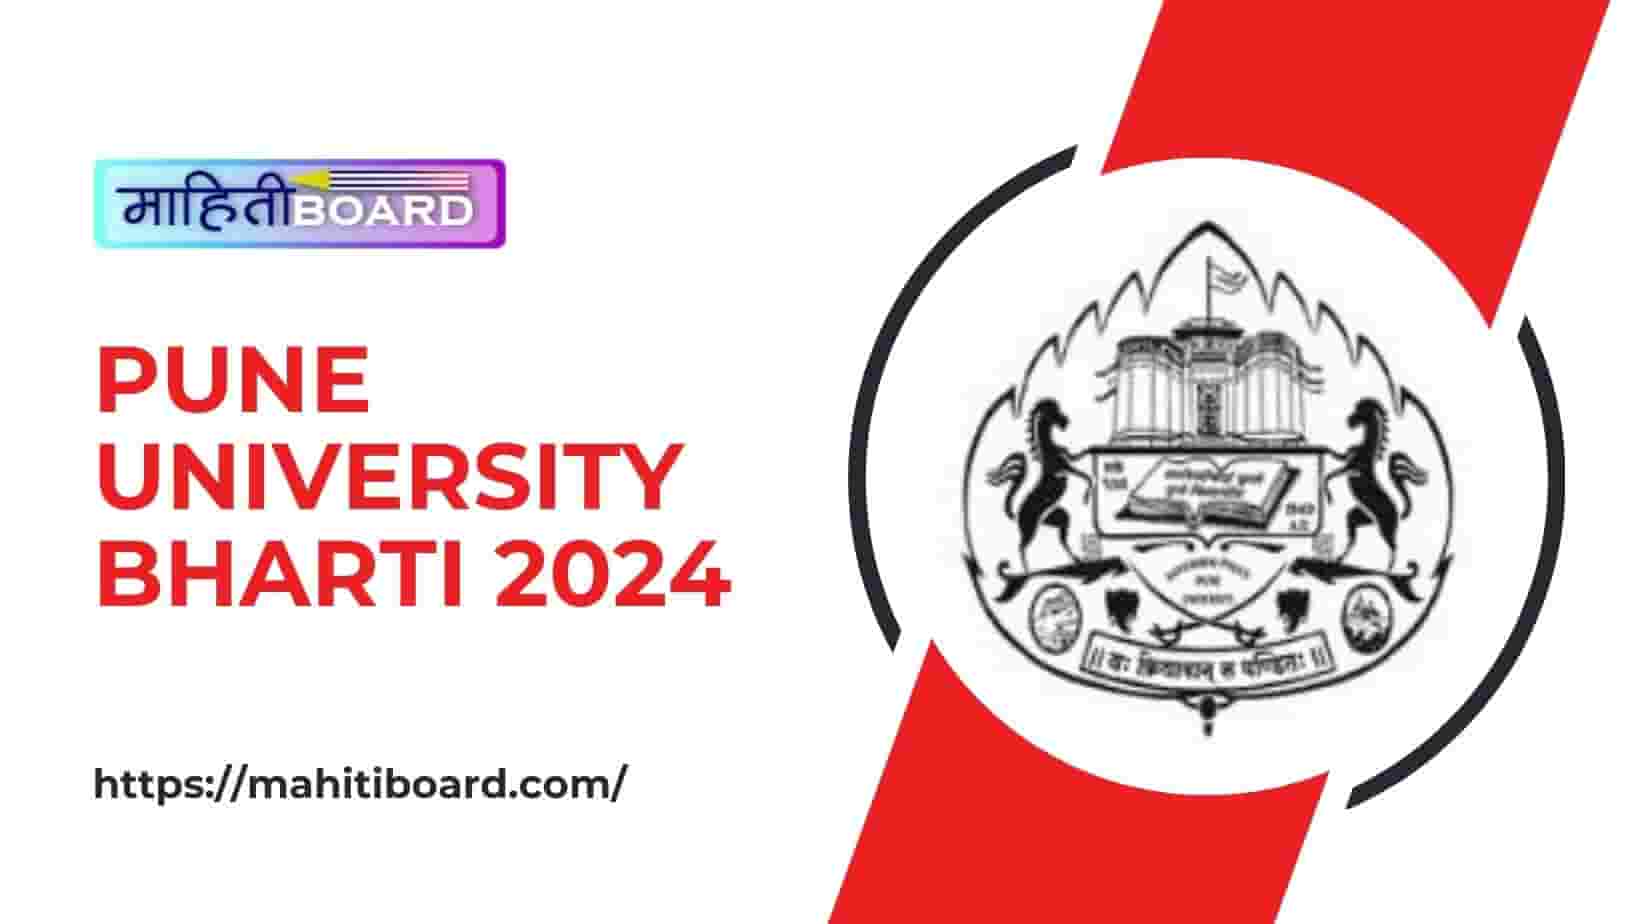 Pune University Bharti 2024